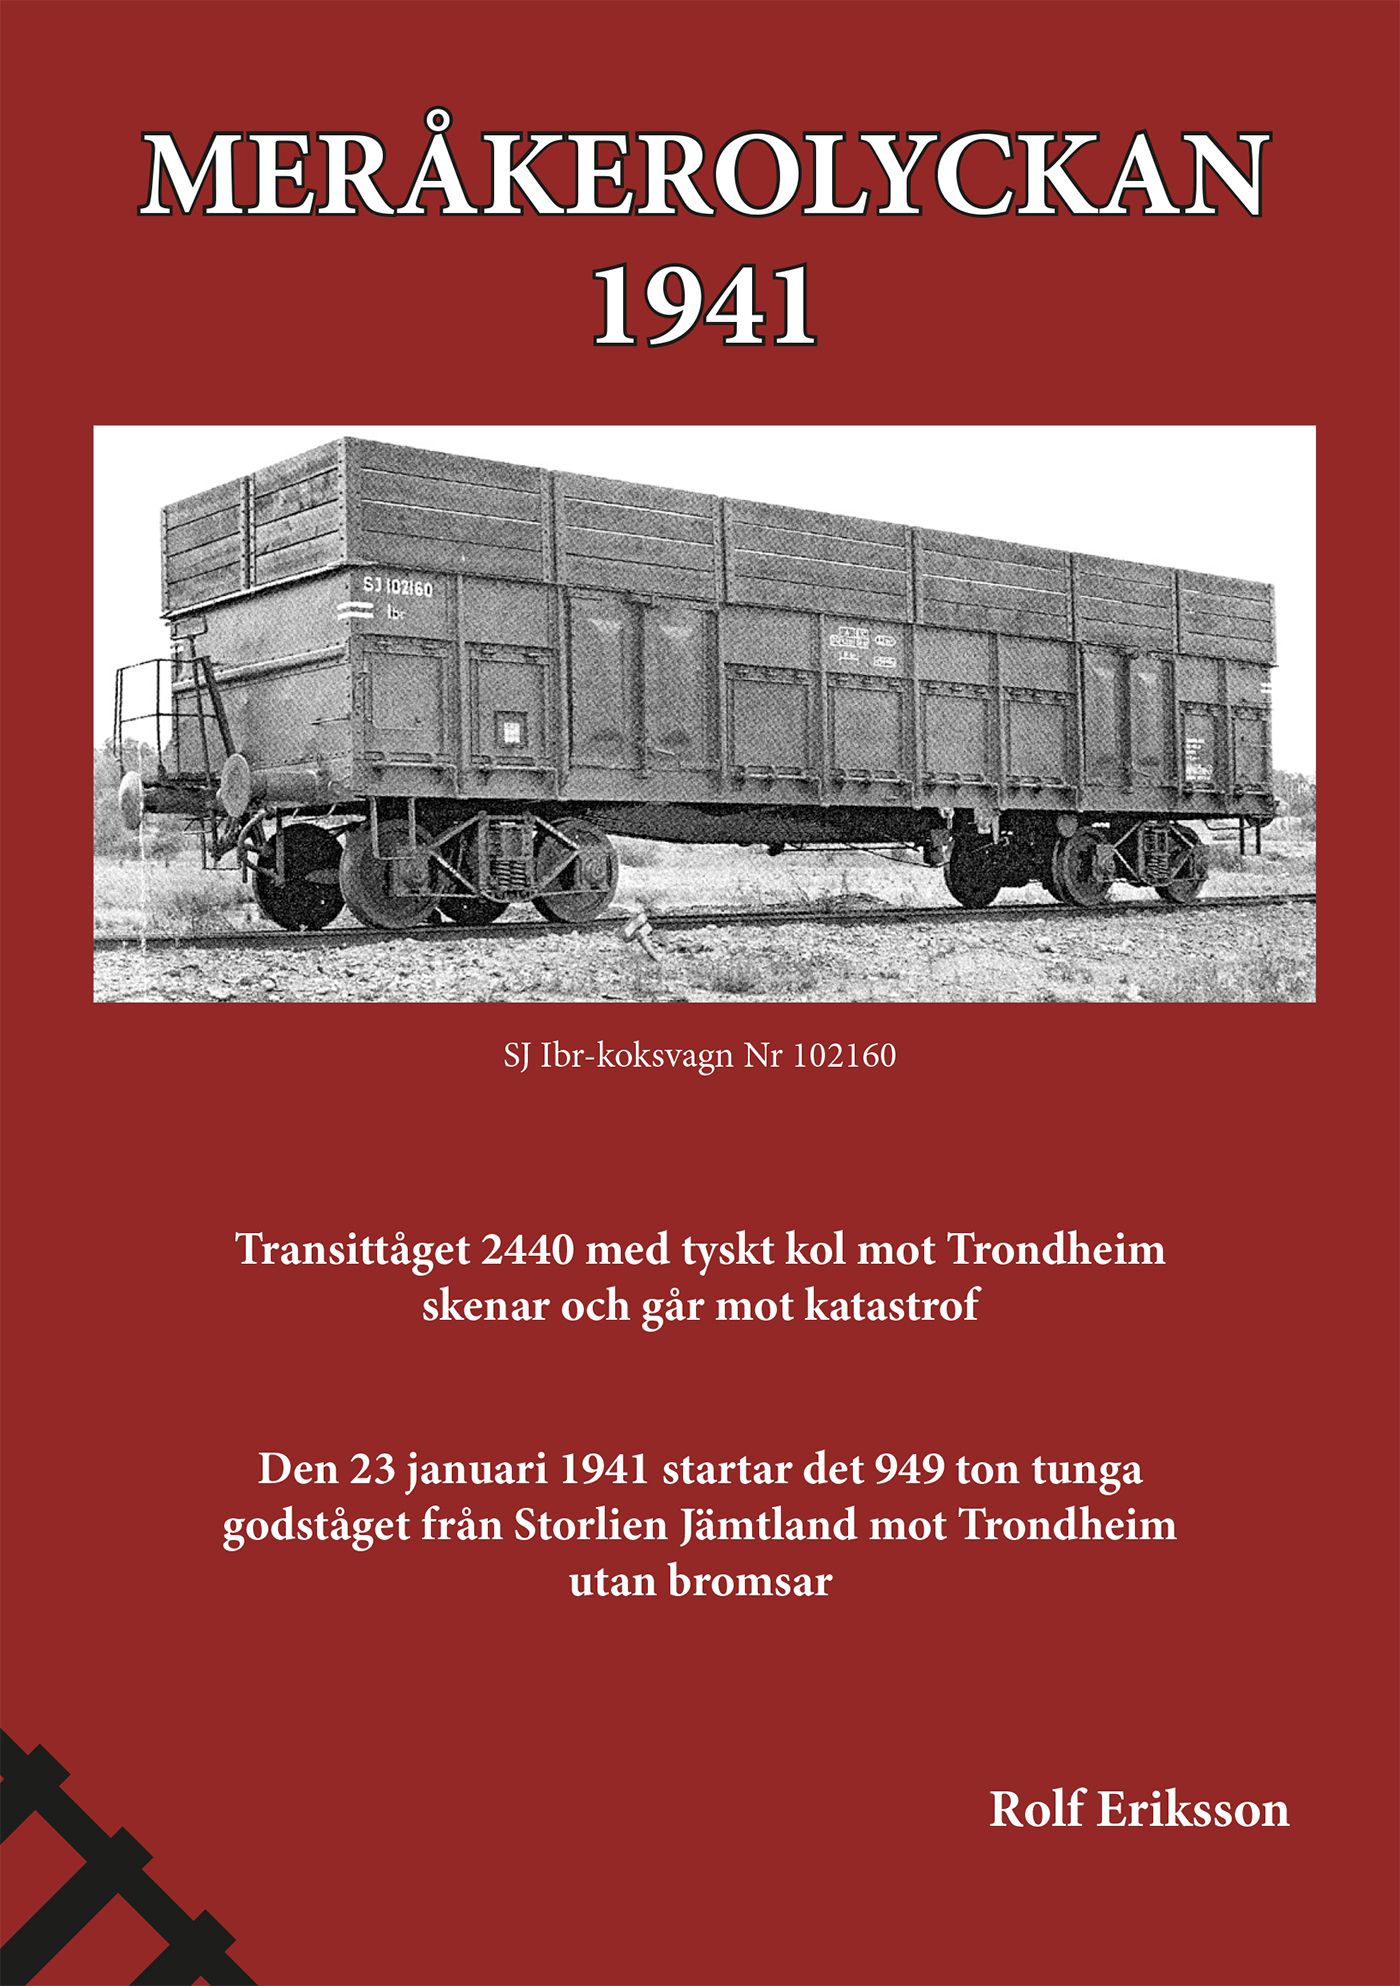 Meråkerolyckan - 1941, e-bog af Rolf Eriksson